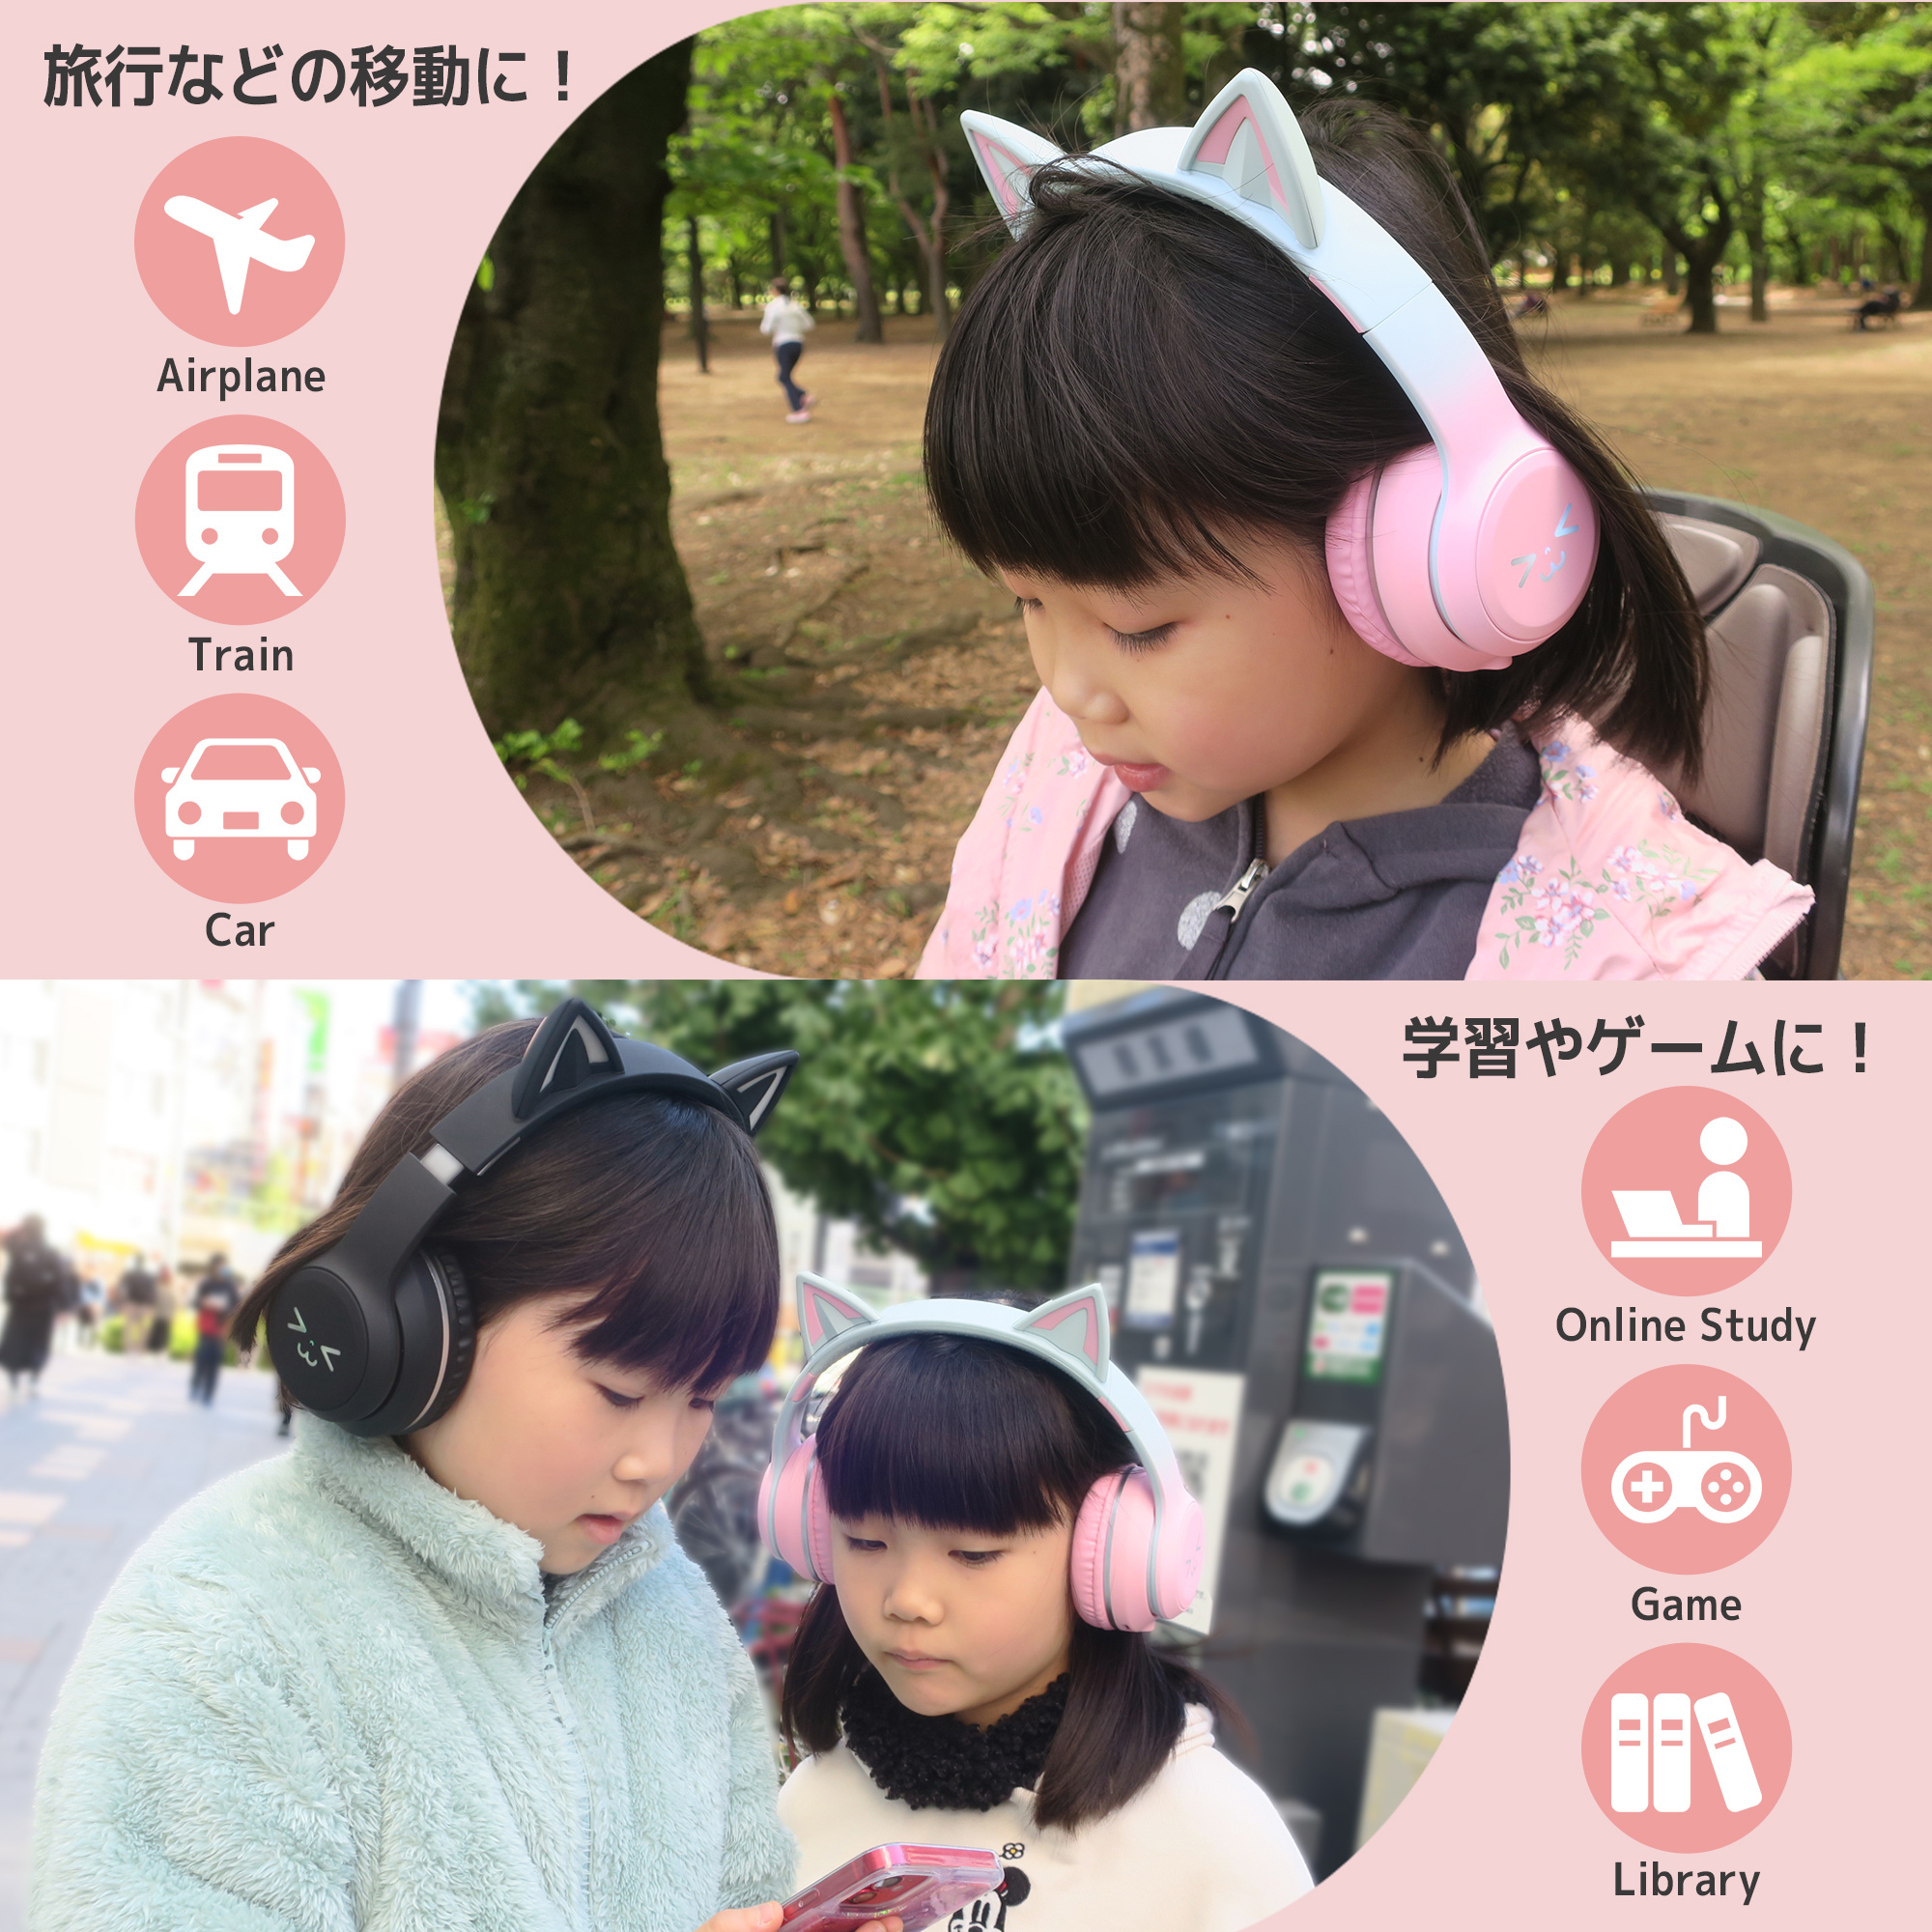 猫耳 ヘッドホン ネコ耳ヘッドフォン Bluetooth5.1 ヘッドセット